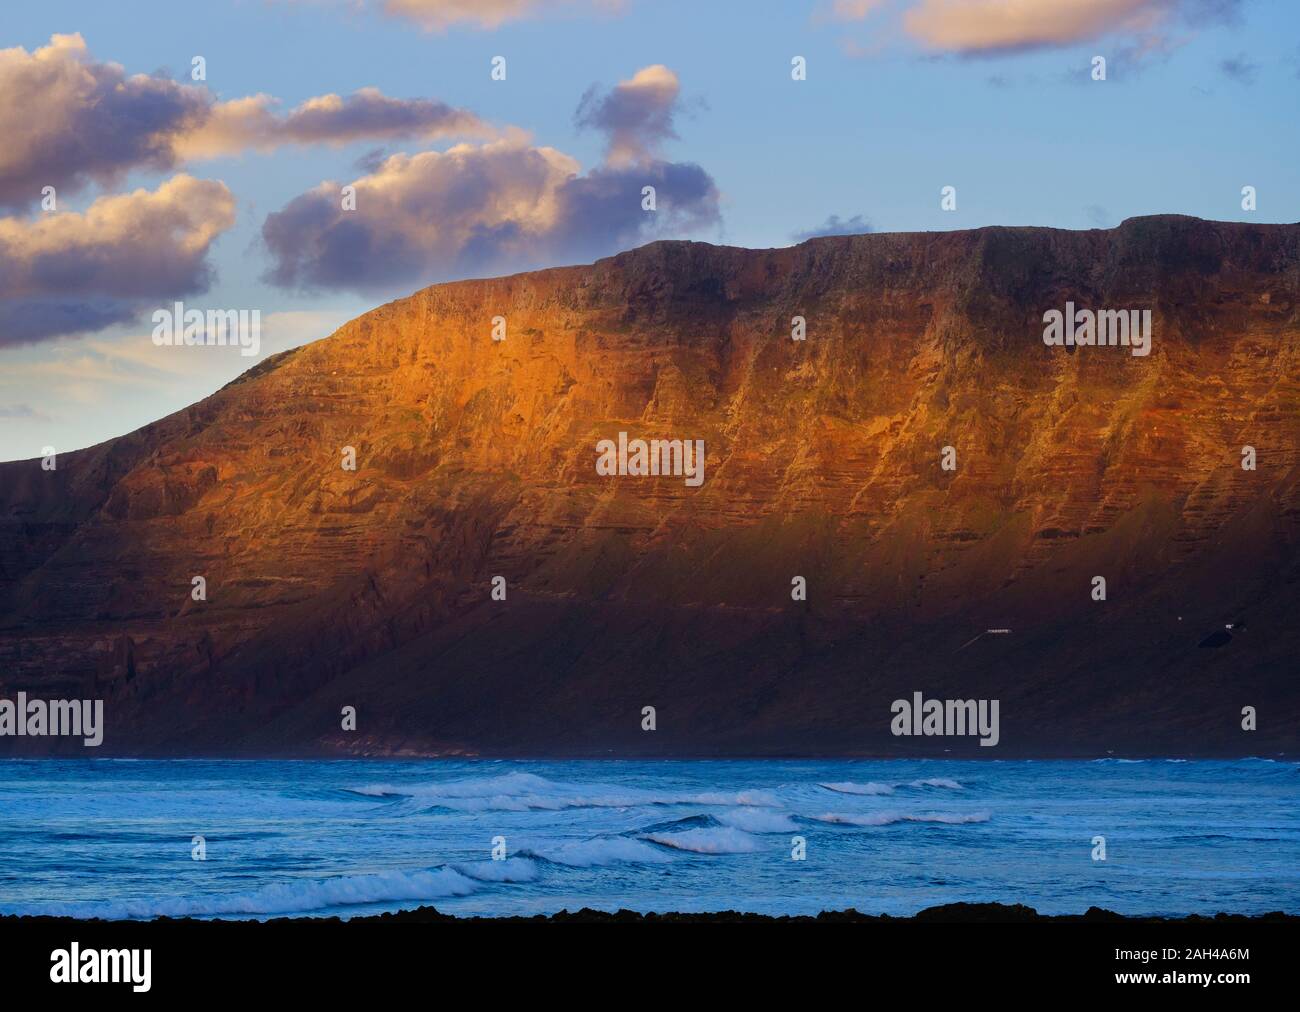 Spain, Canary Islands, Caleta de Famara, Risco de Famara at dusk Stock Photo